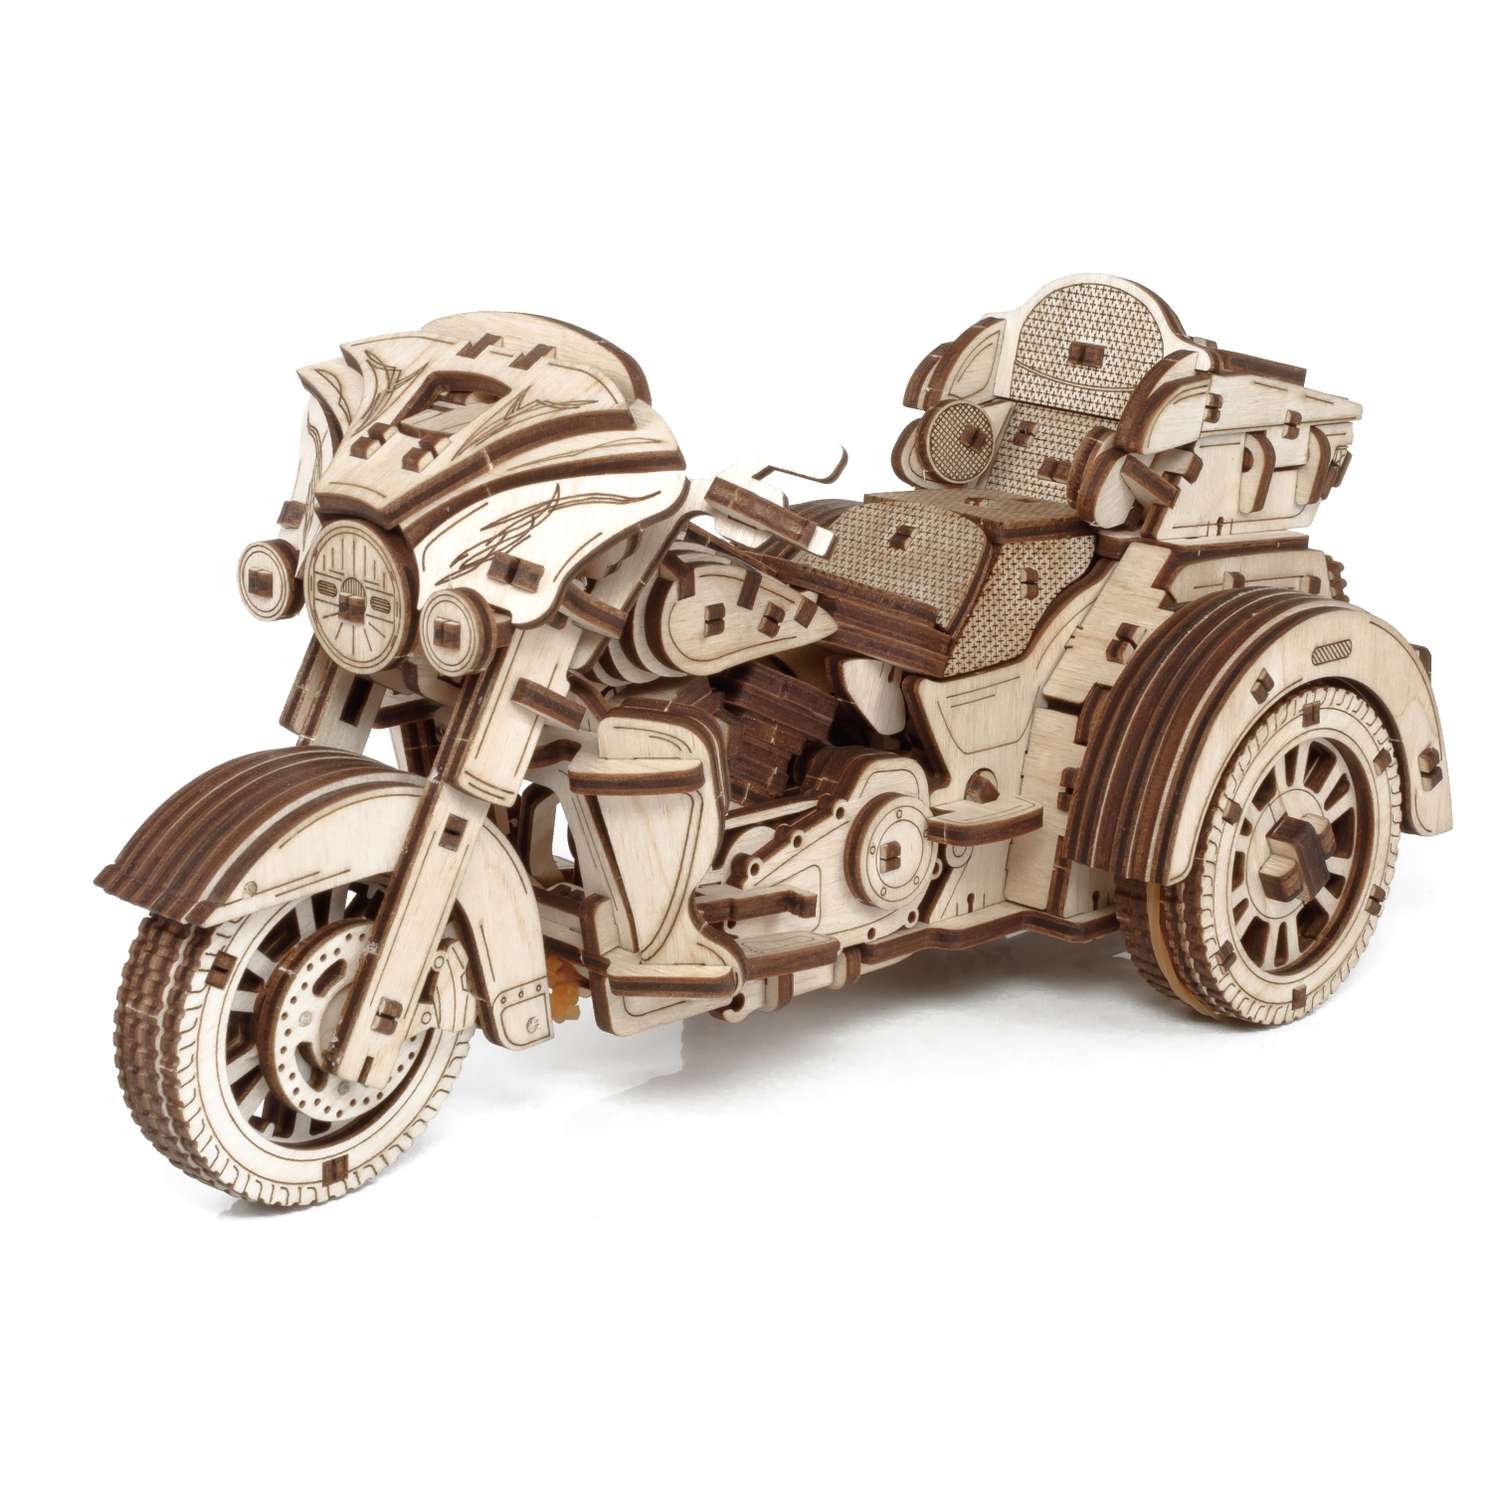 Сборная модель Eco Wood Art Мотоцикл Трайк из дерева ETrike - фото 2